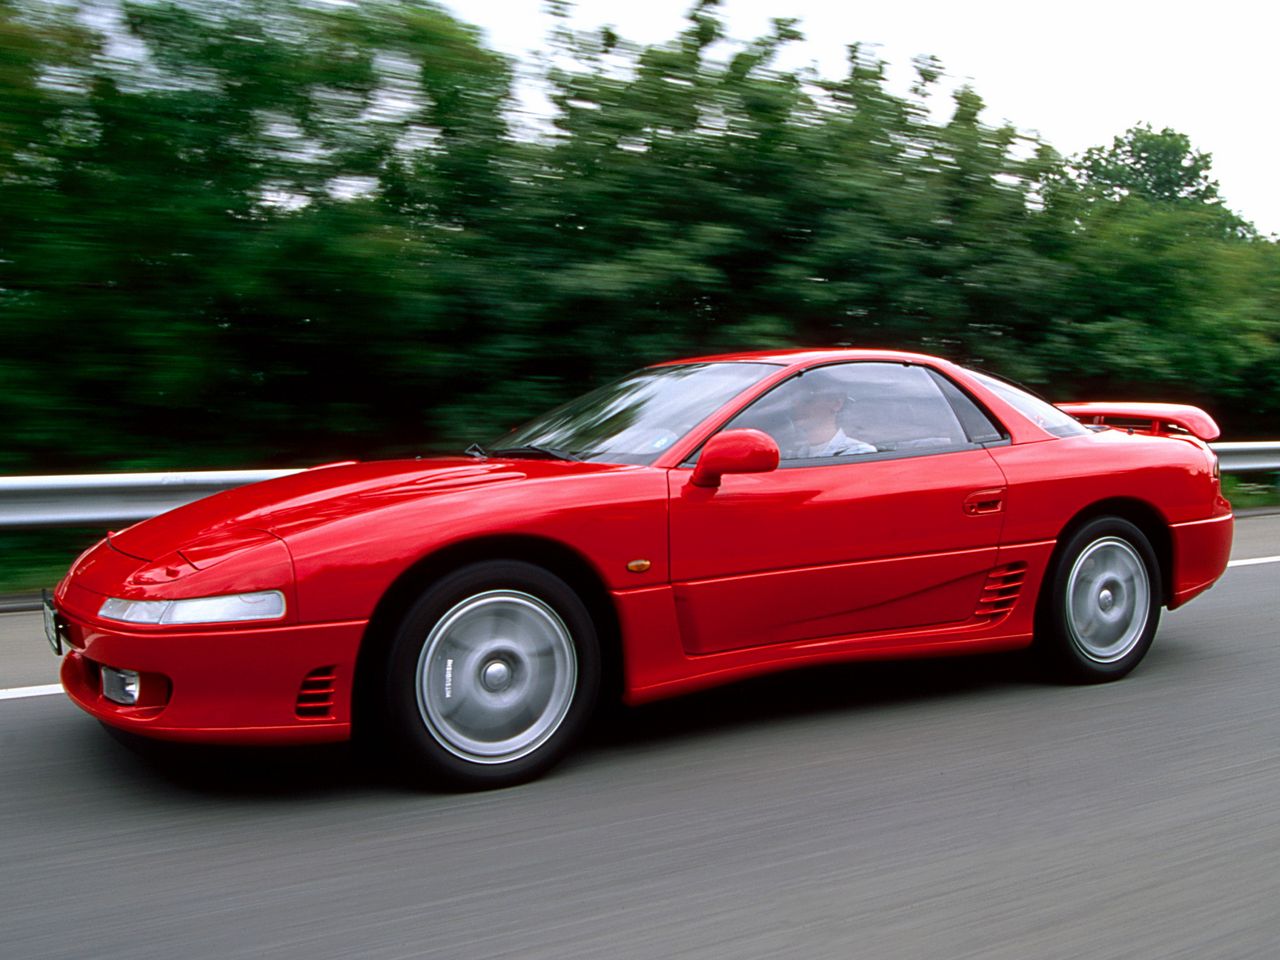 Mitsubishi 3000 GT zaprezentowane w 1990 roku było w swoim czasie prawdziwym dziełem sztuki inżynieryjnej. Technicznie mogło się równać z najbardziej zaawansowanymi modelami Porsche, choć pod względem komplikacji konstrukcji Japończycy w latach 90. i tak byli o krok przed amerykańskimi czy europejskimi biurami projektowymi. Samochód znany również jako Mitsubishi GTO ma duży, doładowany silnik, umieszczony z przodu, który napędza cztery koła w najlepszych wersjach. Częściej jednak spotkacie ten model pod nazwą Dodge Stealth z napędem na przód.